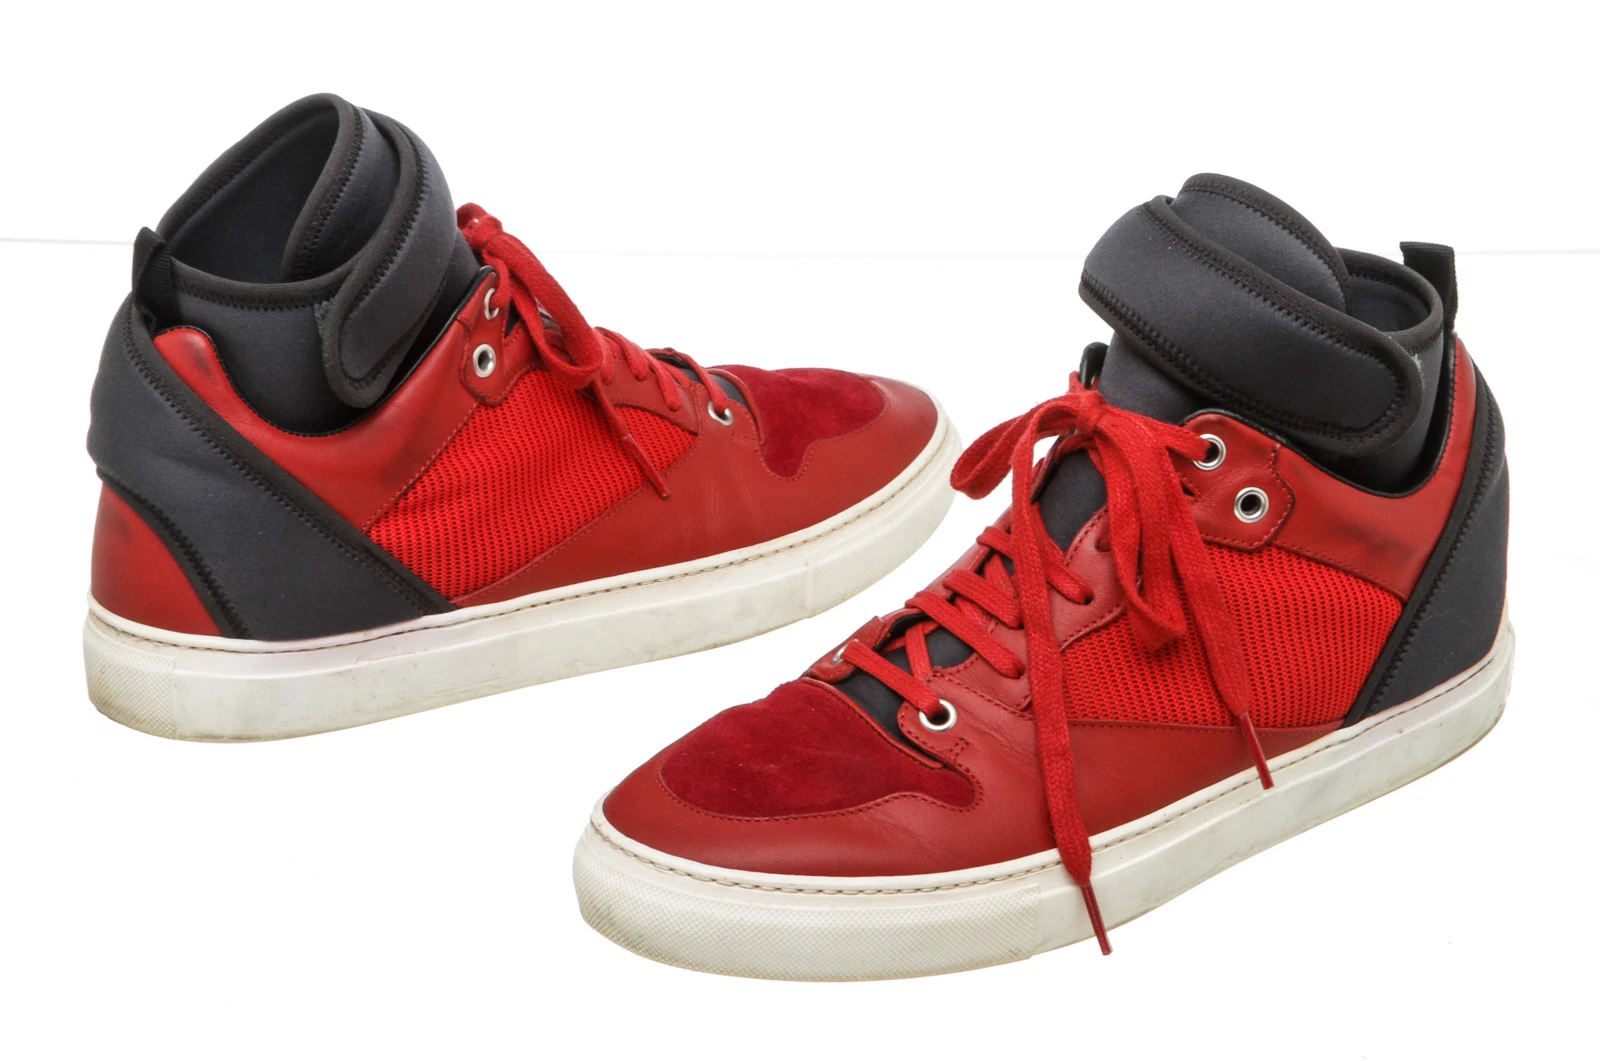 red balenciaga high top sneakers